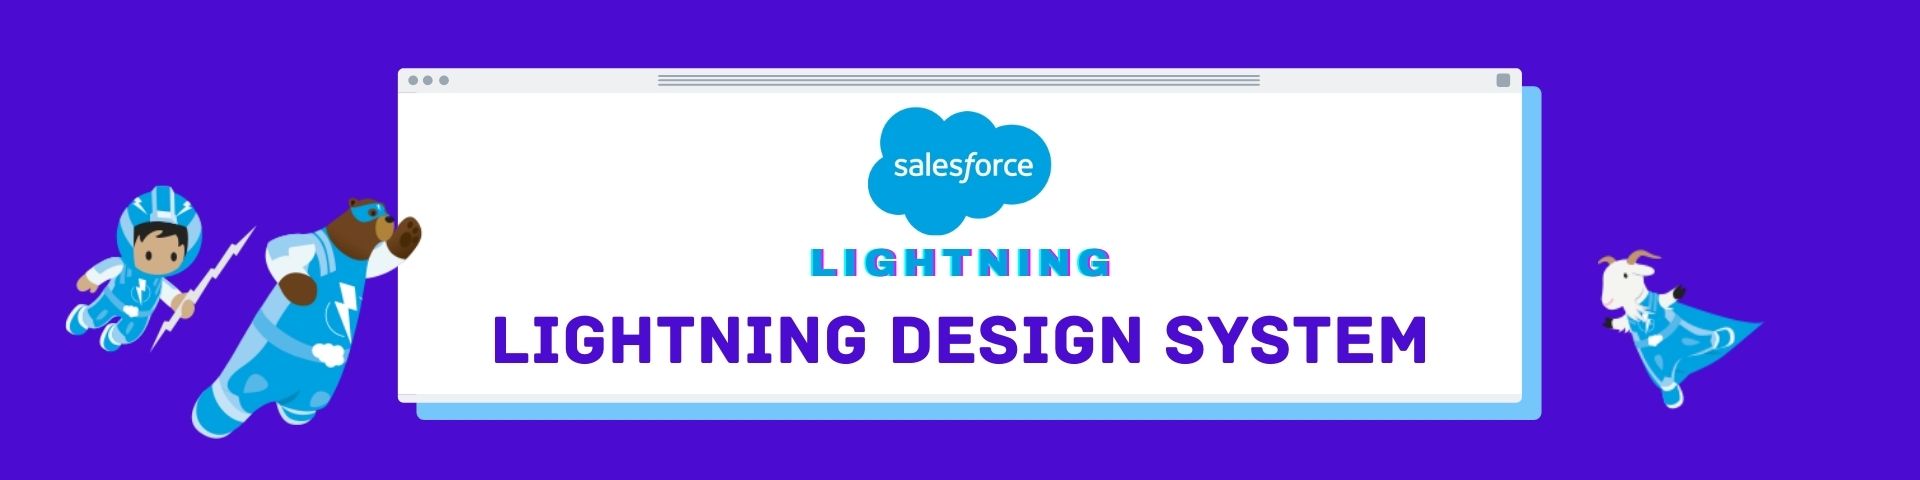 Salesforce Lightning Design system